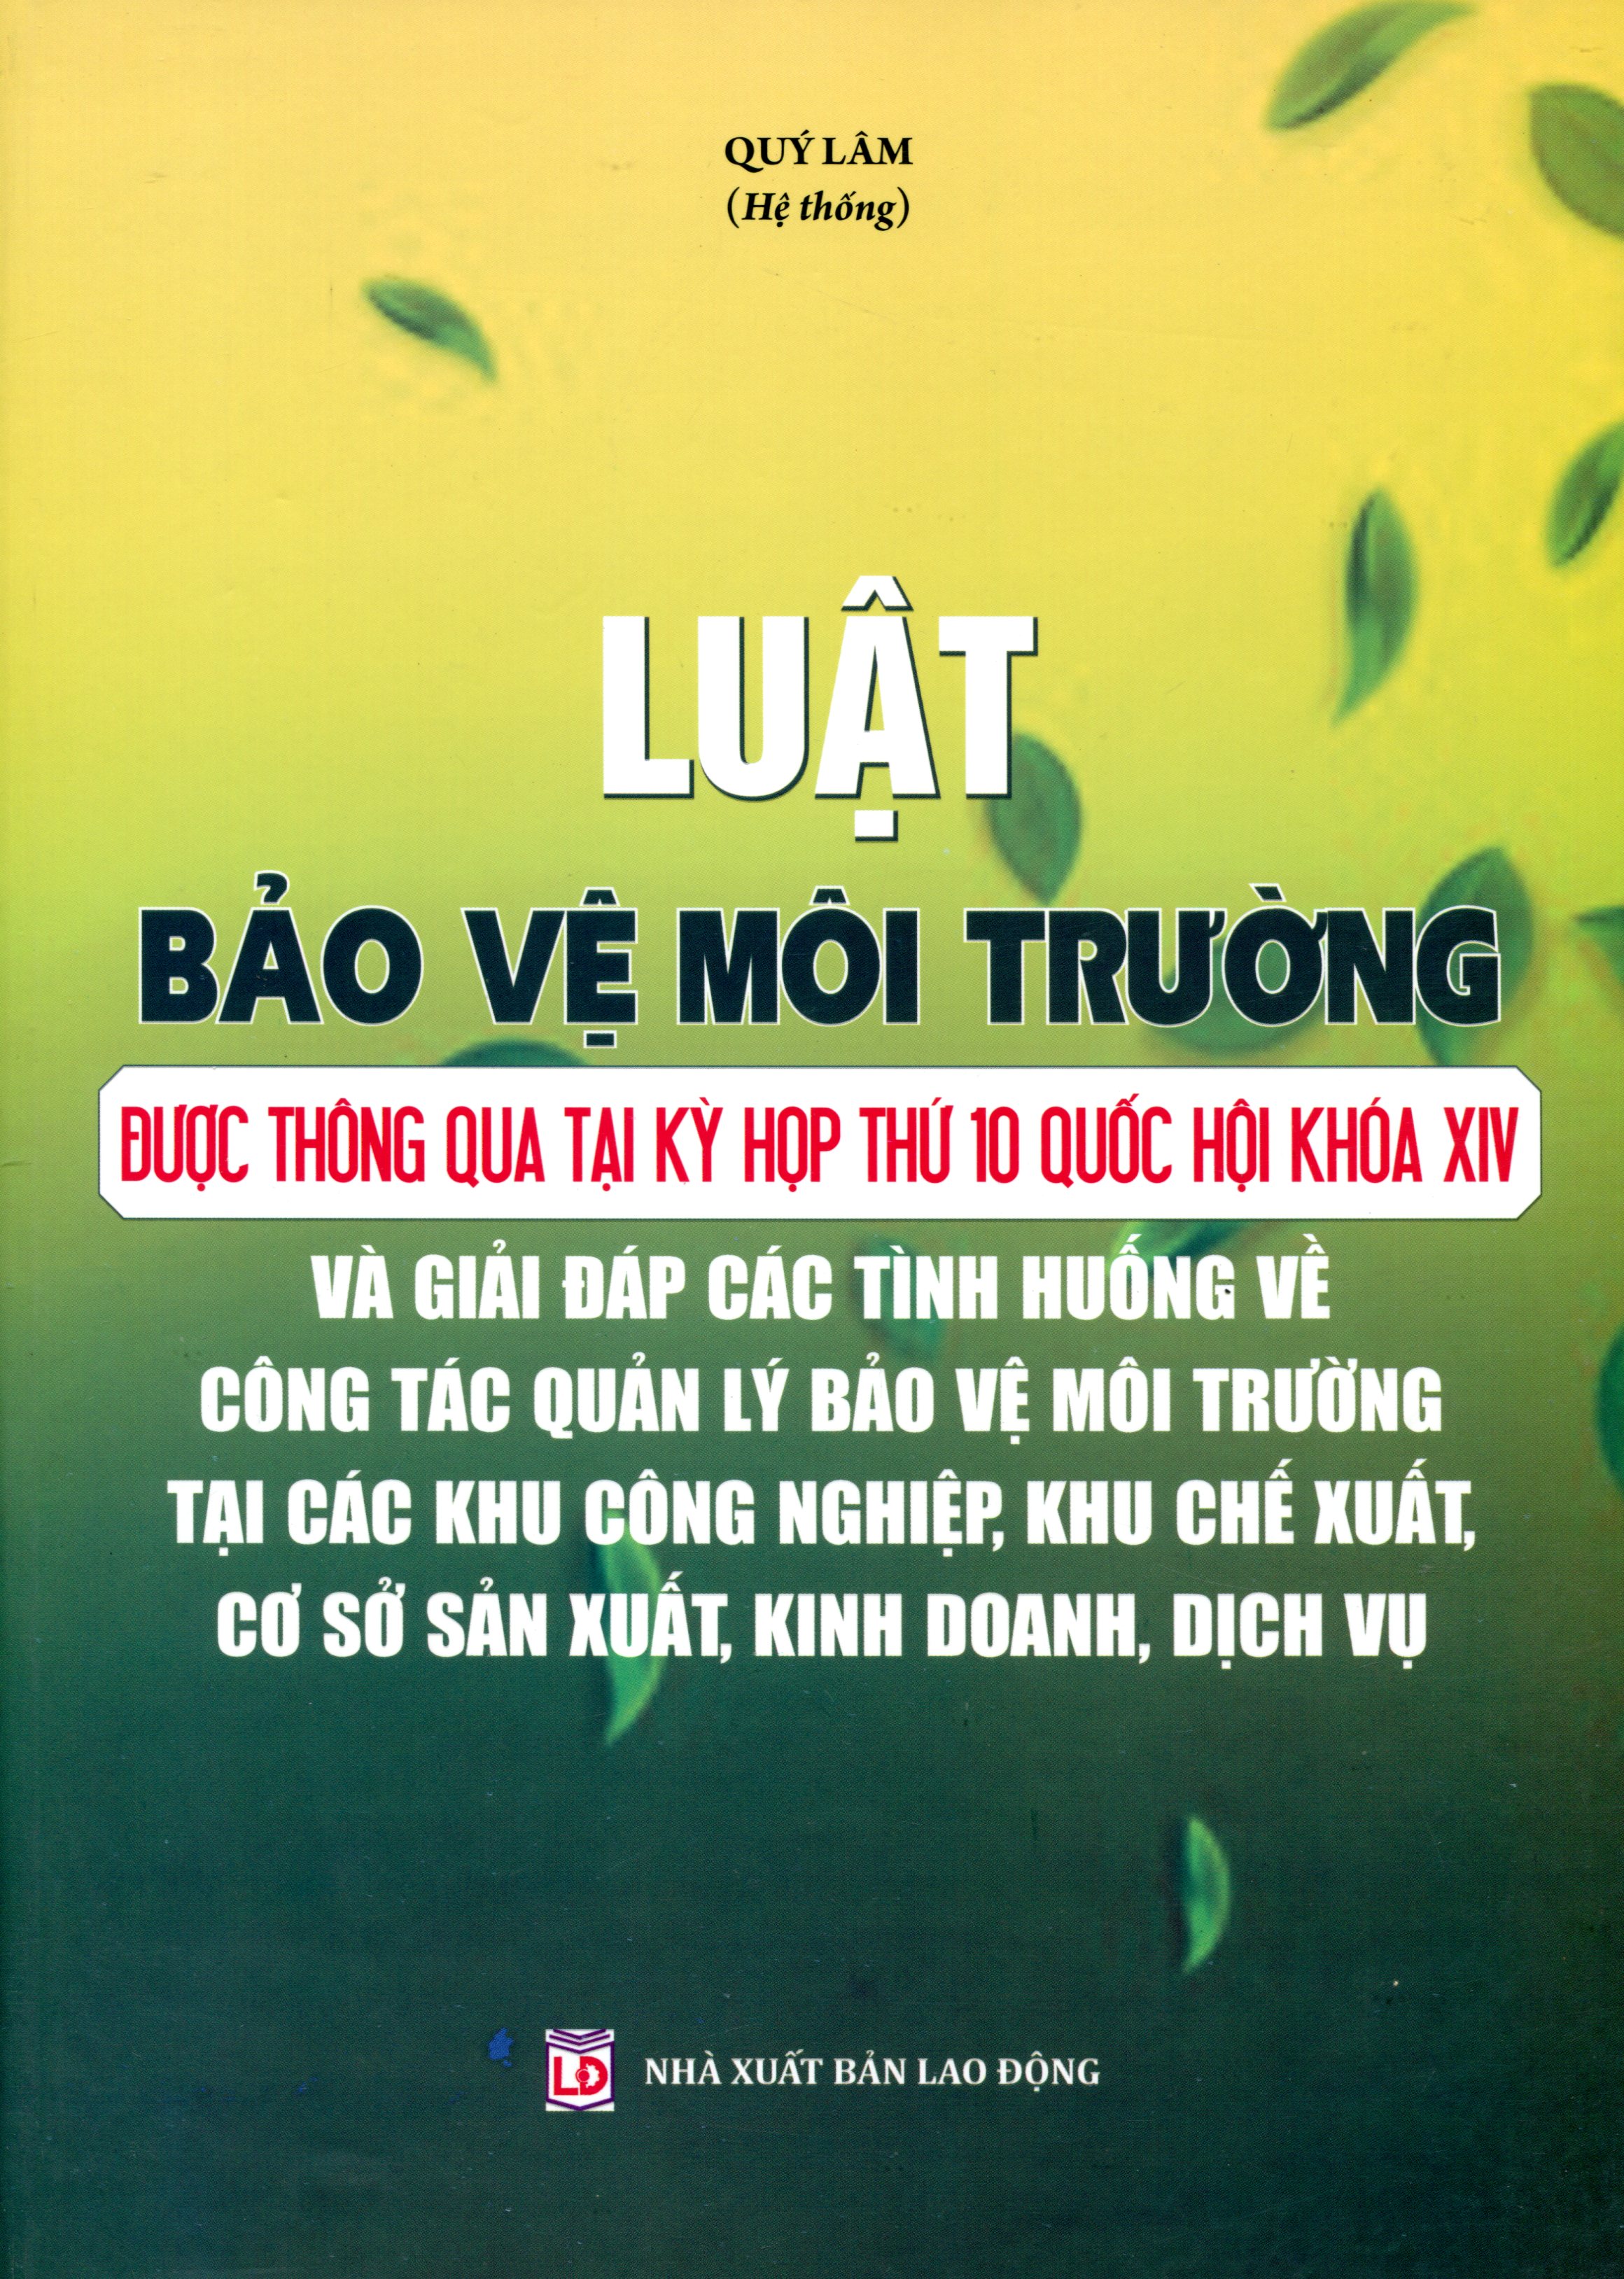 Luật Bảo Vệ Môi Trường Và Nhiệm Vụ, Giải Pháp Cấp Bách Về Hoạt Động Bảo Vệ Môi Trường (Song Ngữ Việt - Anh)